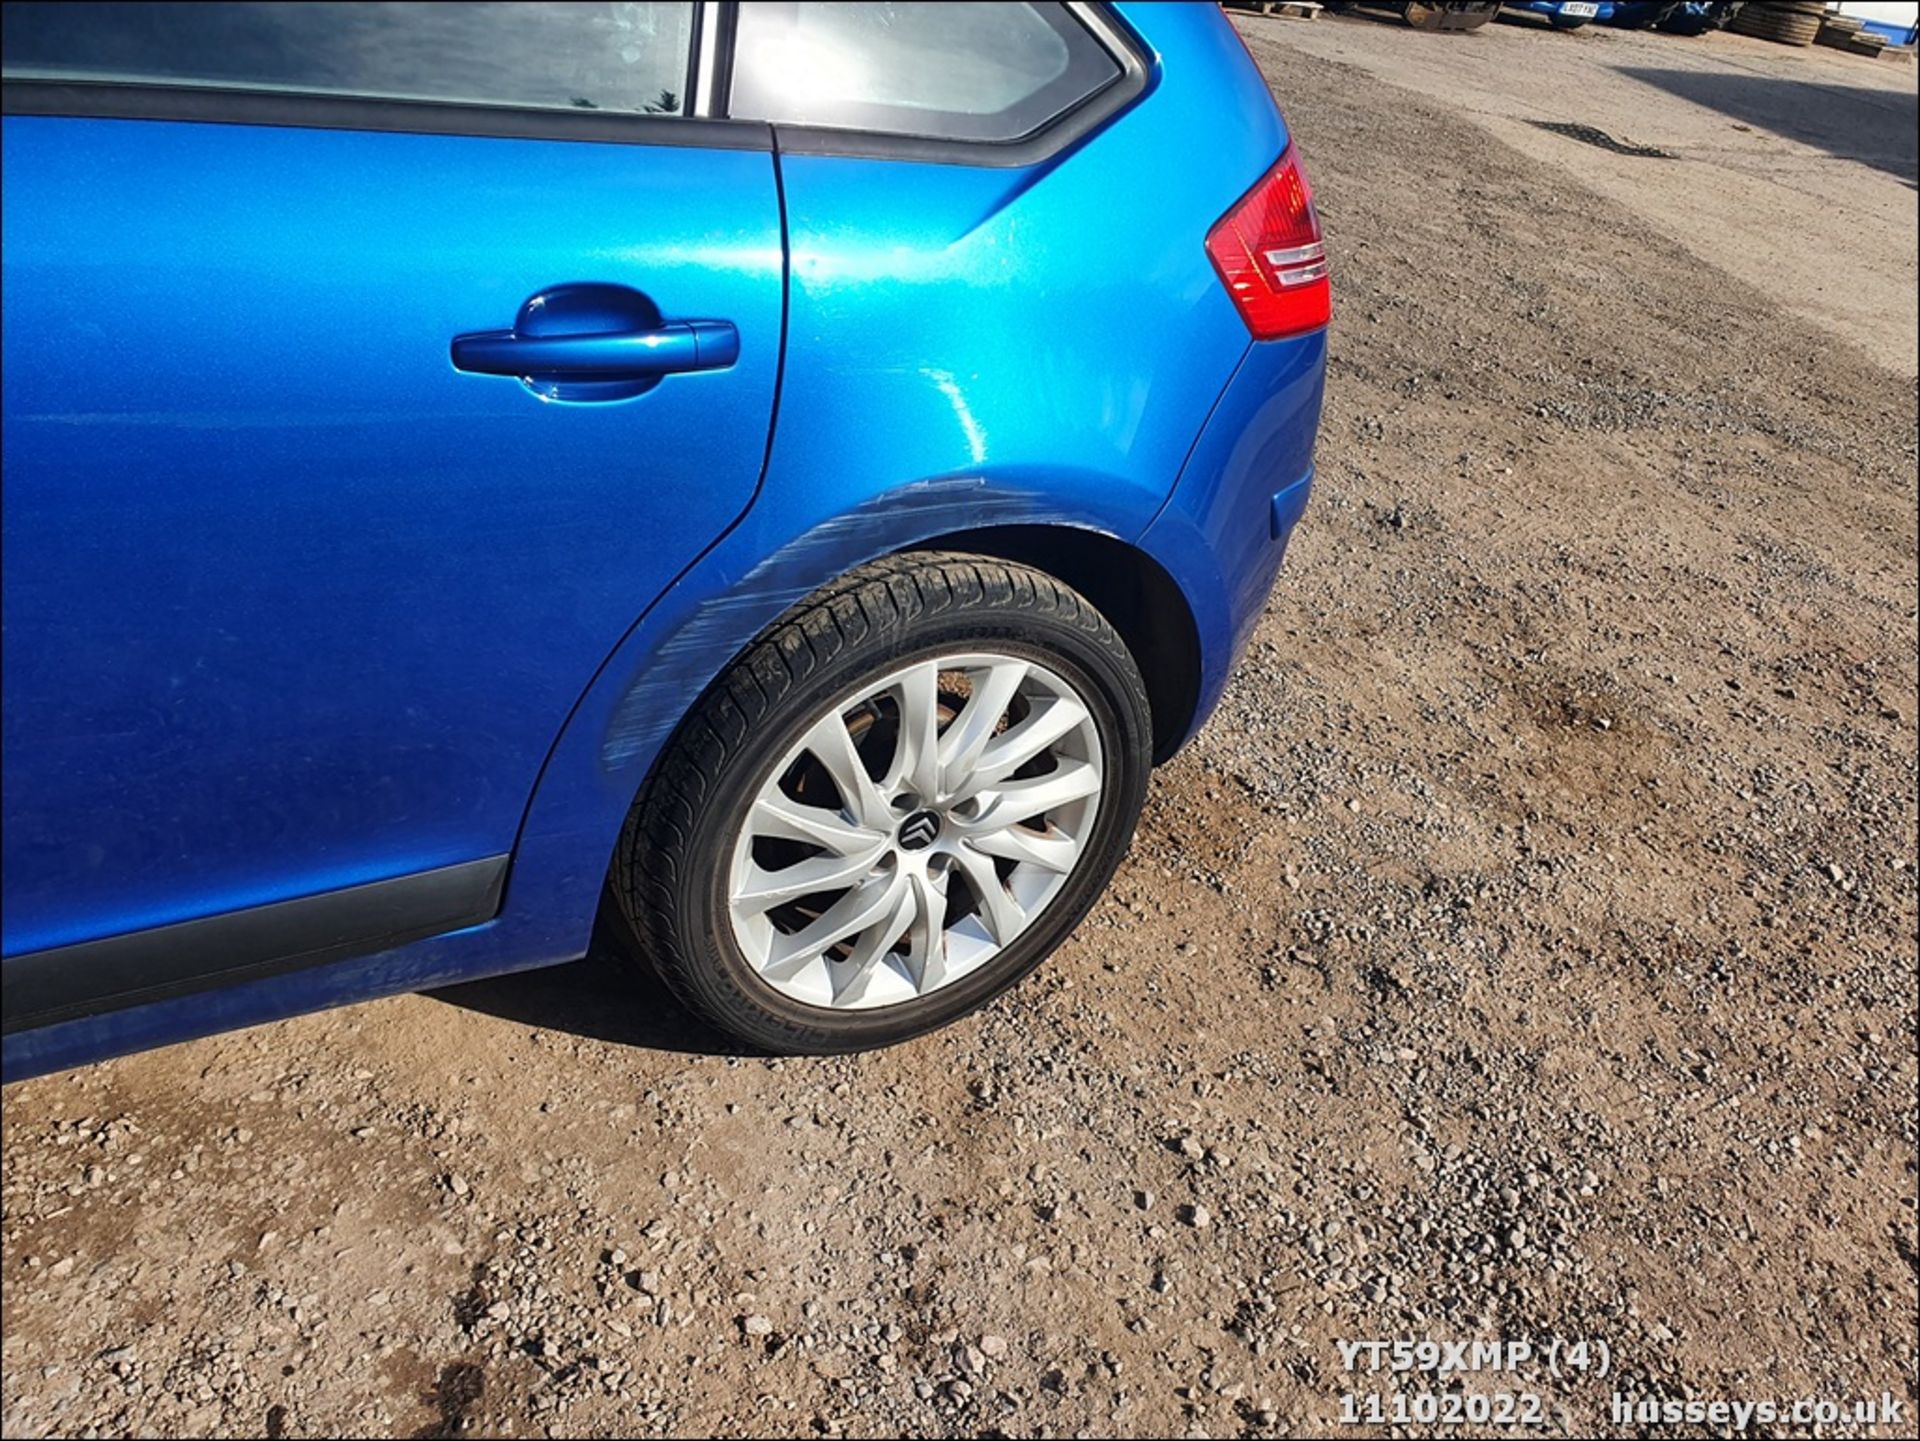 09/59 CITROEN C4 EXCLUSIVE 16V - 1598cc 5dr Hatchback (Blue) - Image 8 of 37